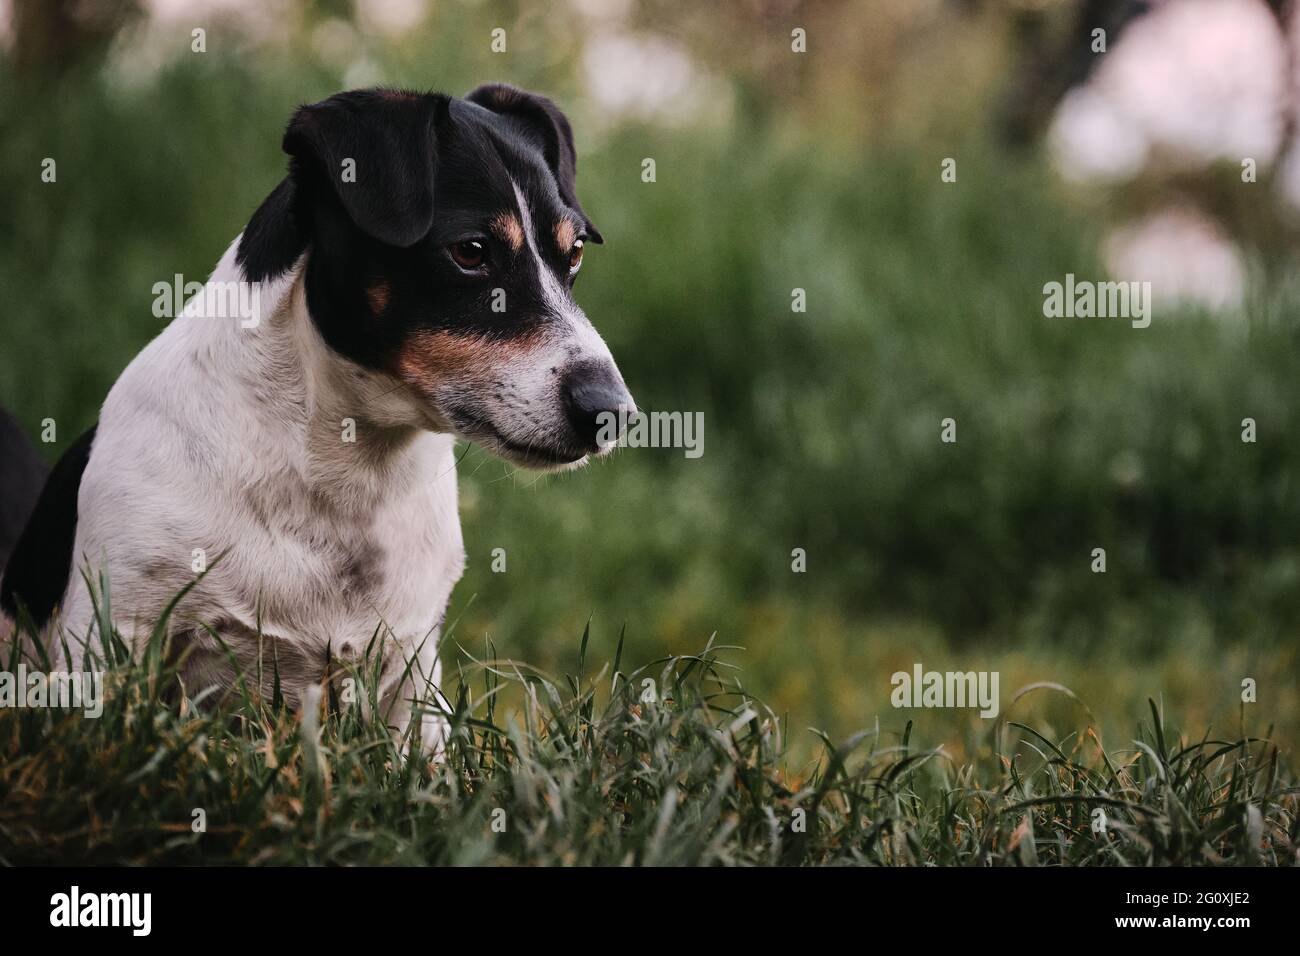 Le chien s'assoit sur l'herbe verte et regarde avec soin devant lui. Chien  de chasse anglais de taille différente. Jack Russell Terrier blanc et noir  aux cheveux lisses à l'entrée Photo Stock -